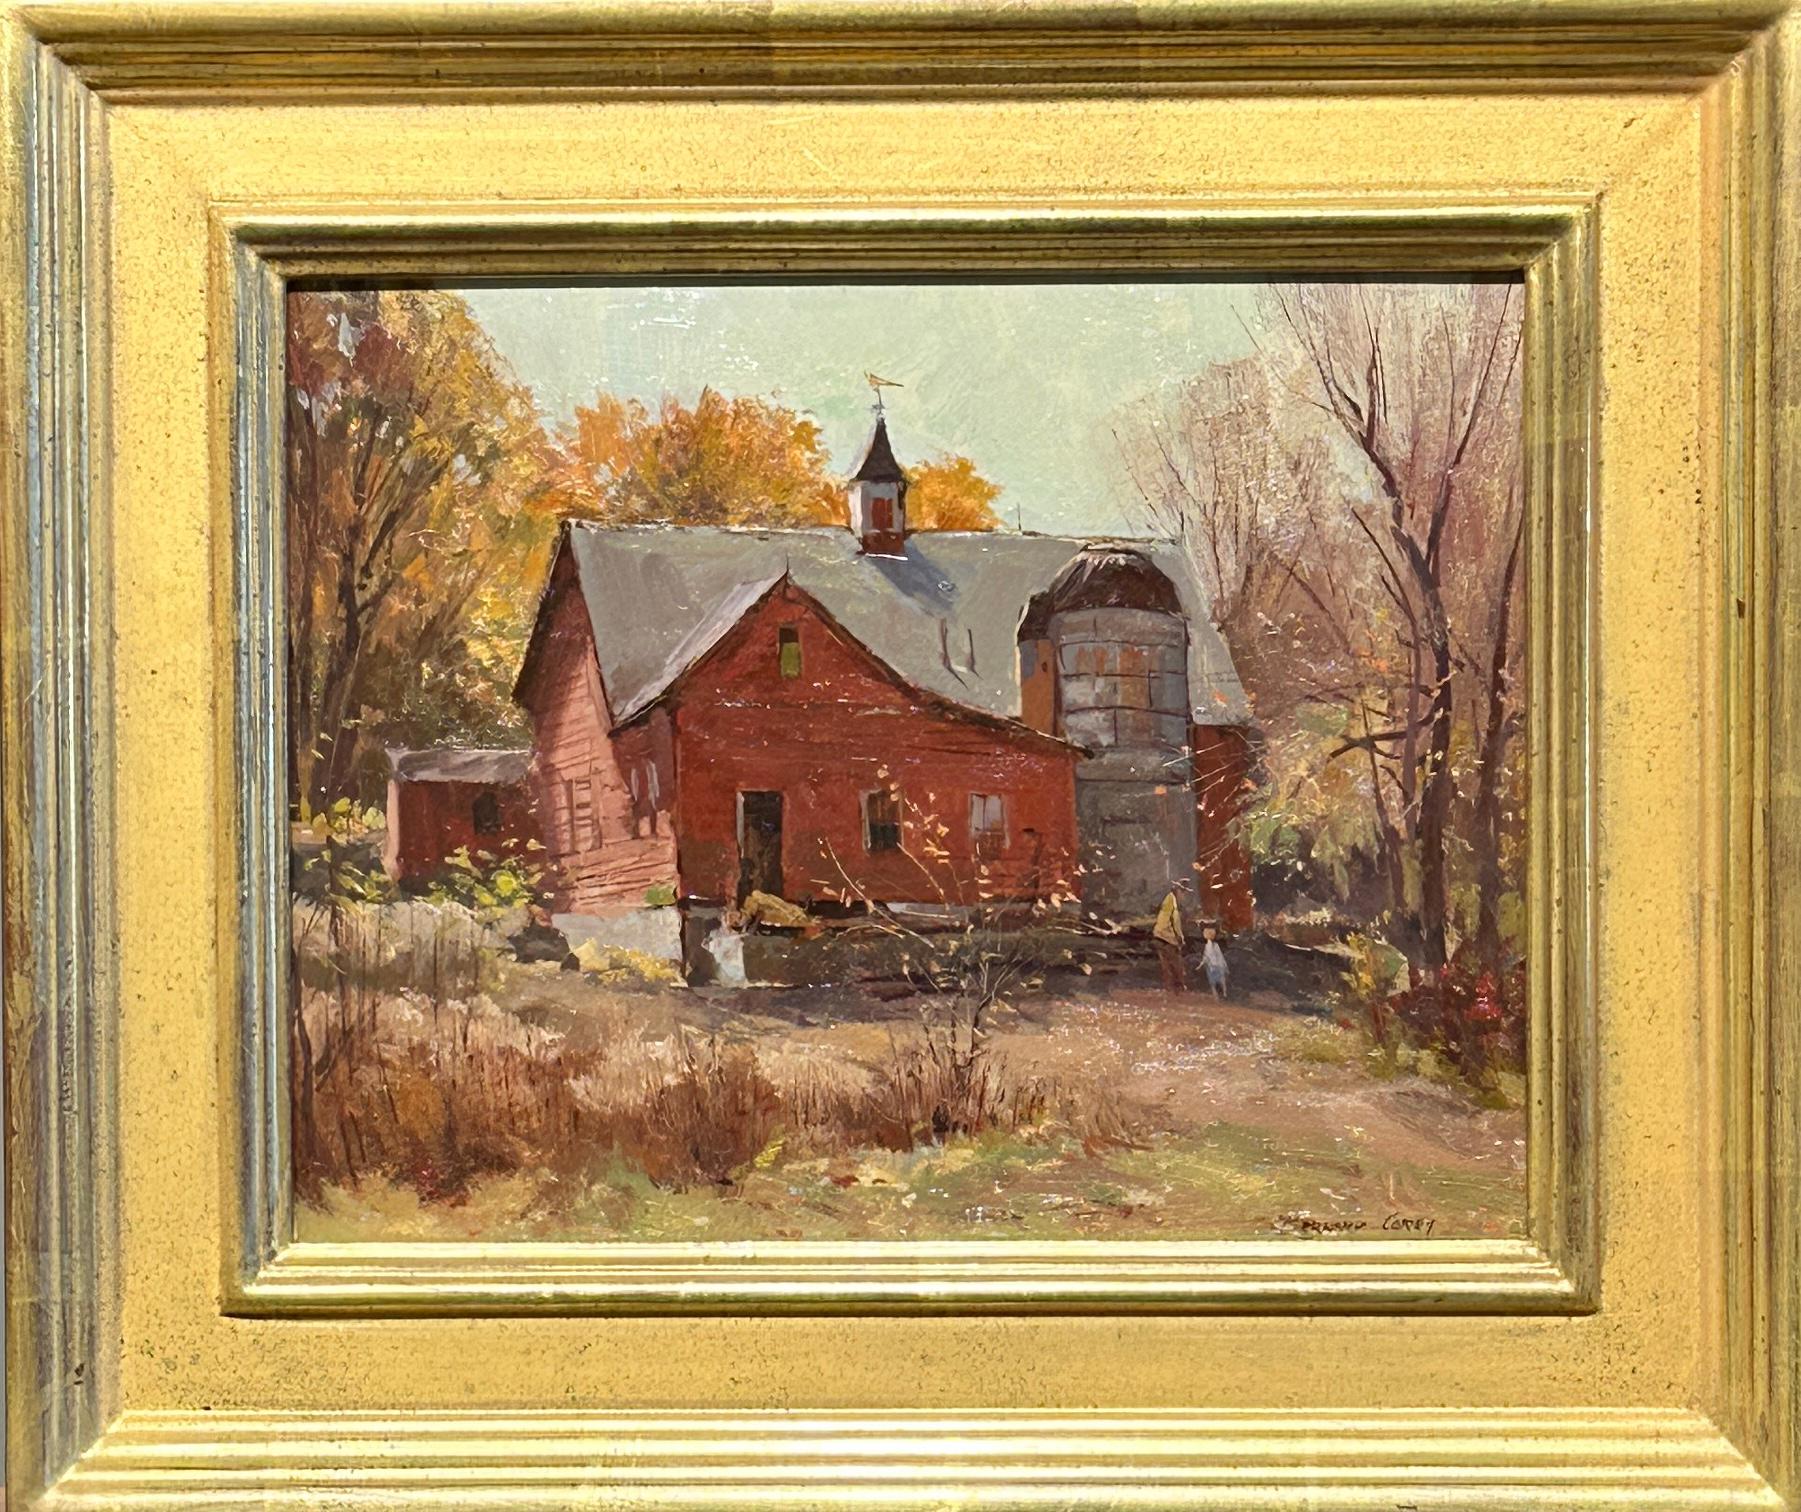 Bernard Corey était un artiste renommé de Rockport, dans le Massachusetts. Il est né le 26 décembre 1914 et est décédé le 27 décembre 2000. Corey était principalement connu pour ses peintures et ses gravures, représentant souvent des scènes de la